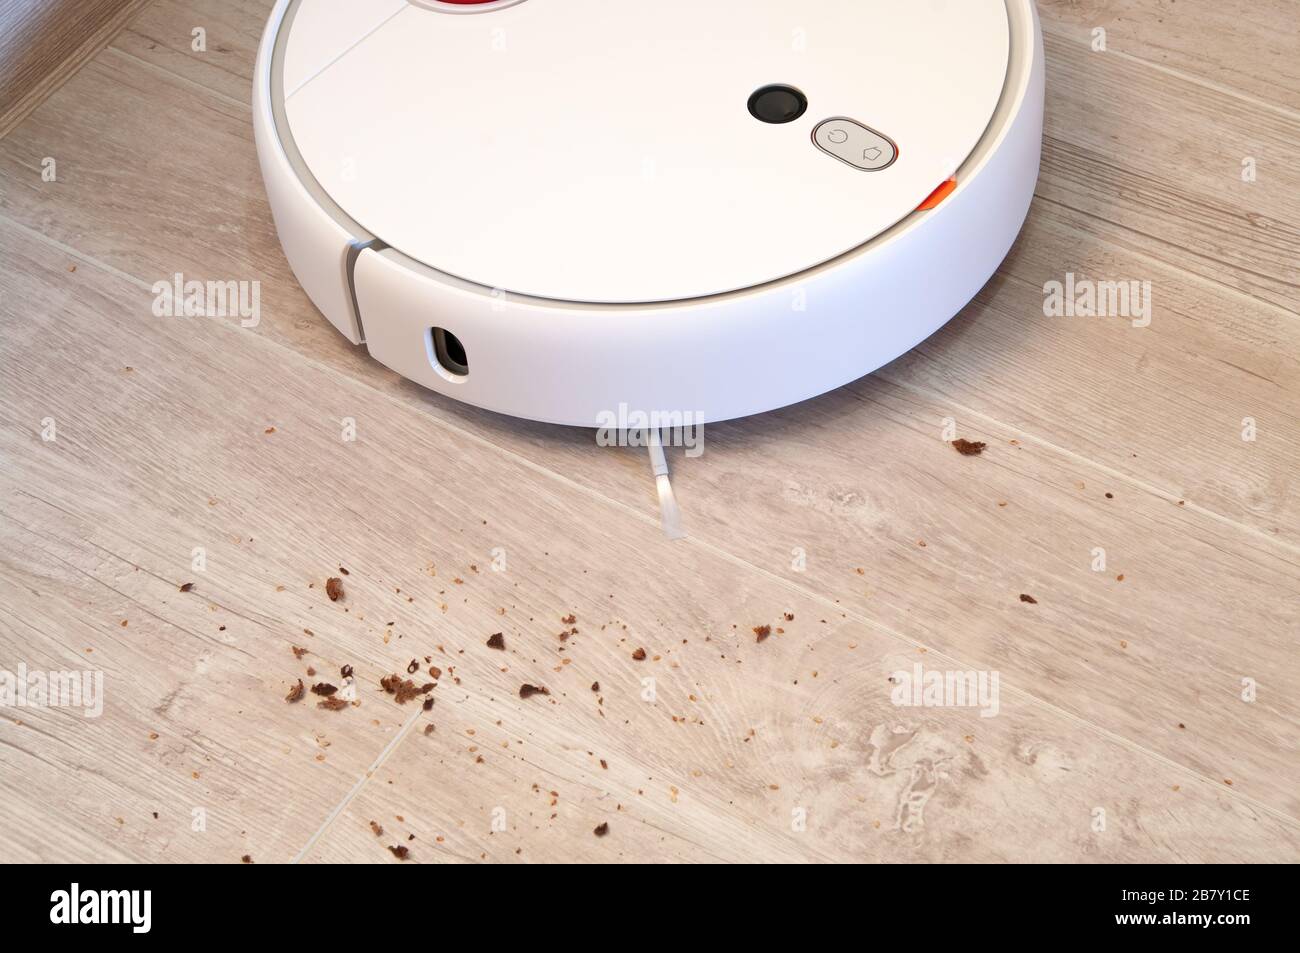 Der Roboter-Staubsauger entfernt Brotkrümel aus dem Laminatboden. Intelligente Reinigungstechnologie. Stockfoto